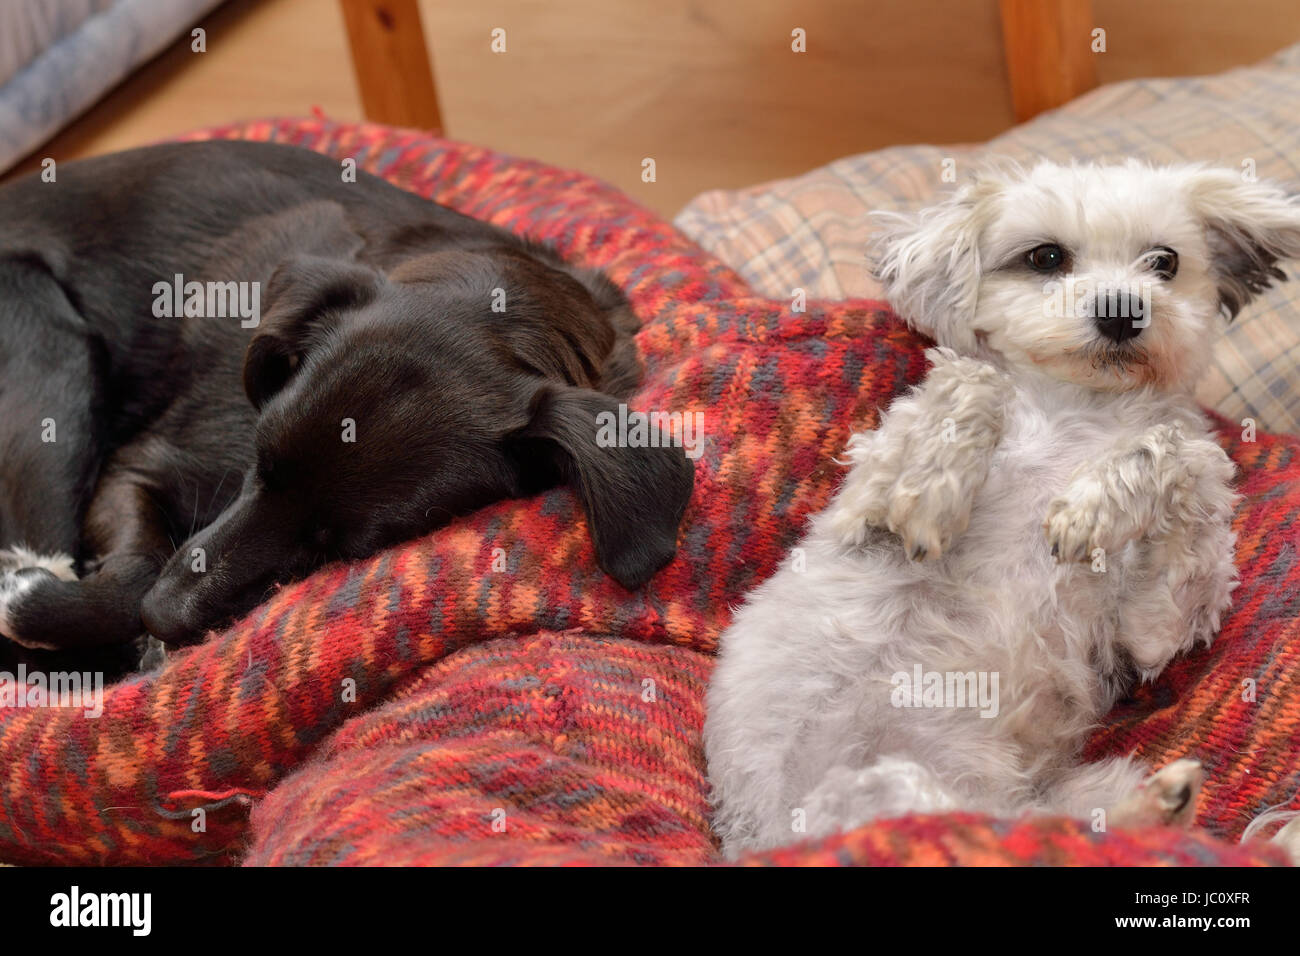 Zwei Hunde liegen entspannt in ihrem Hundebett Stock Photo